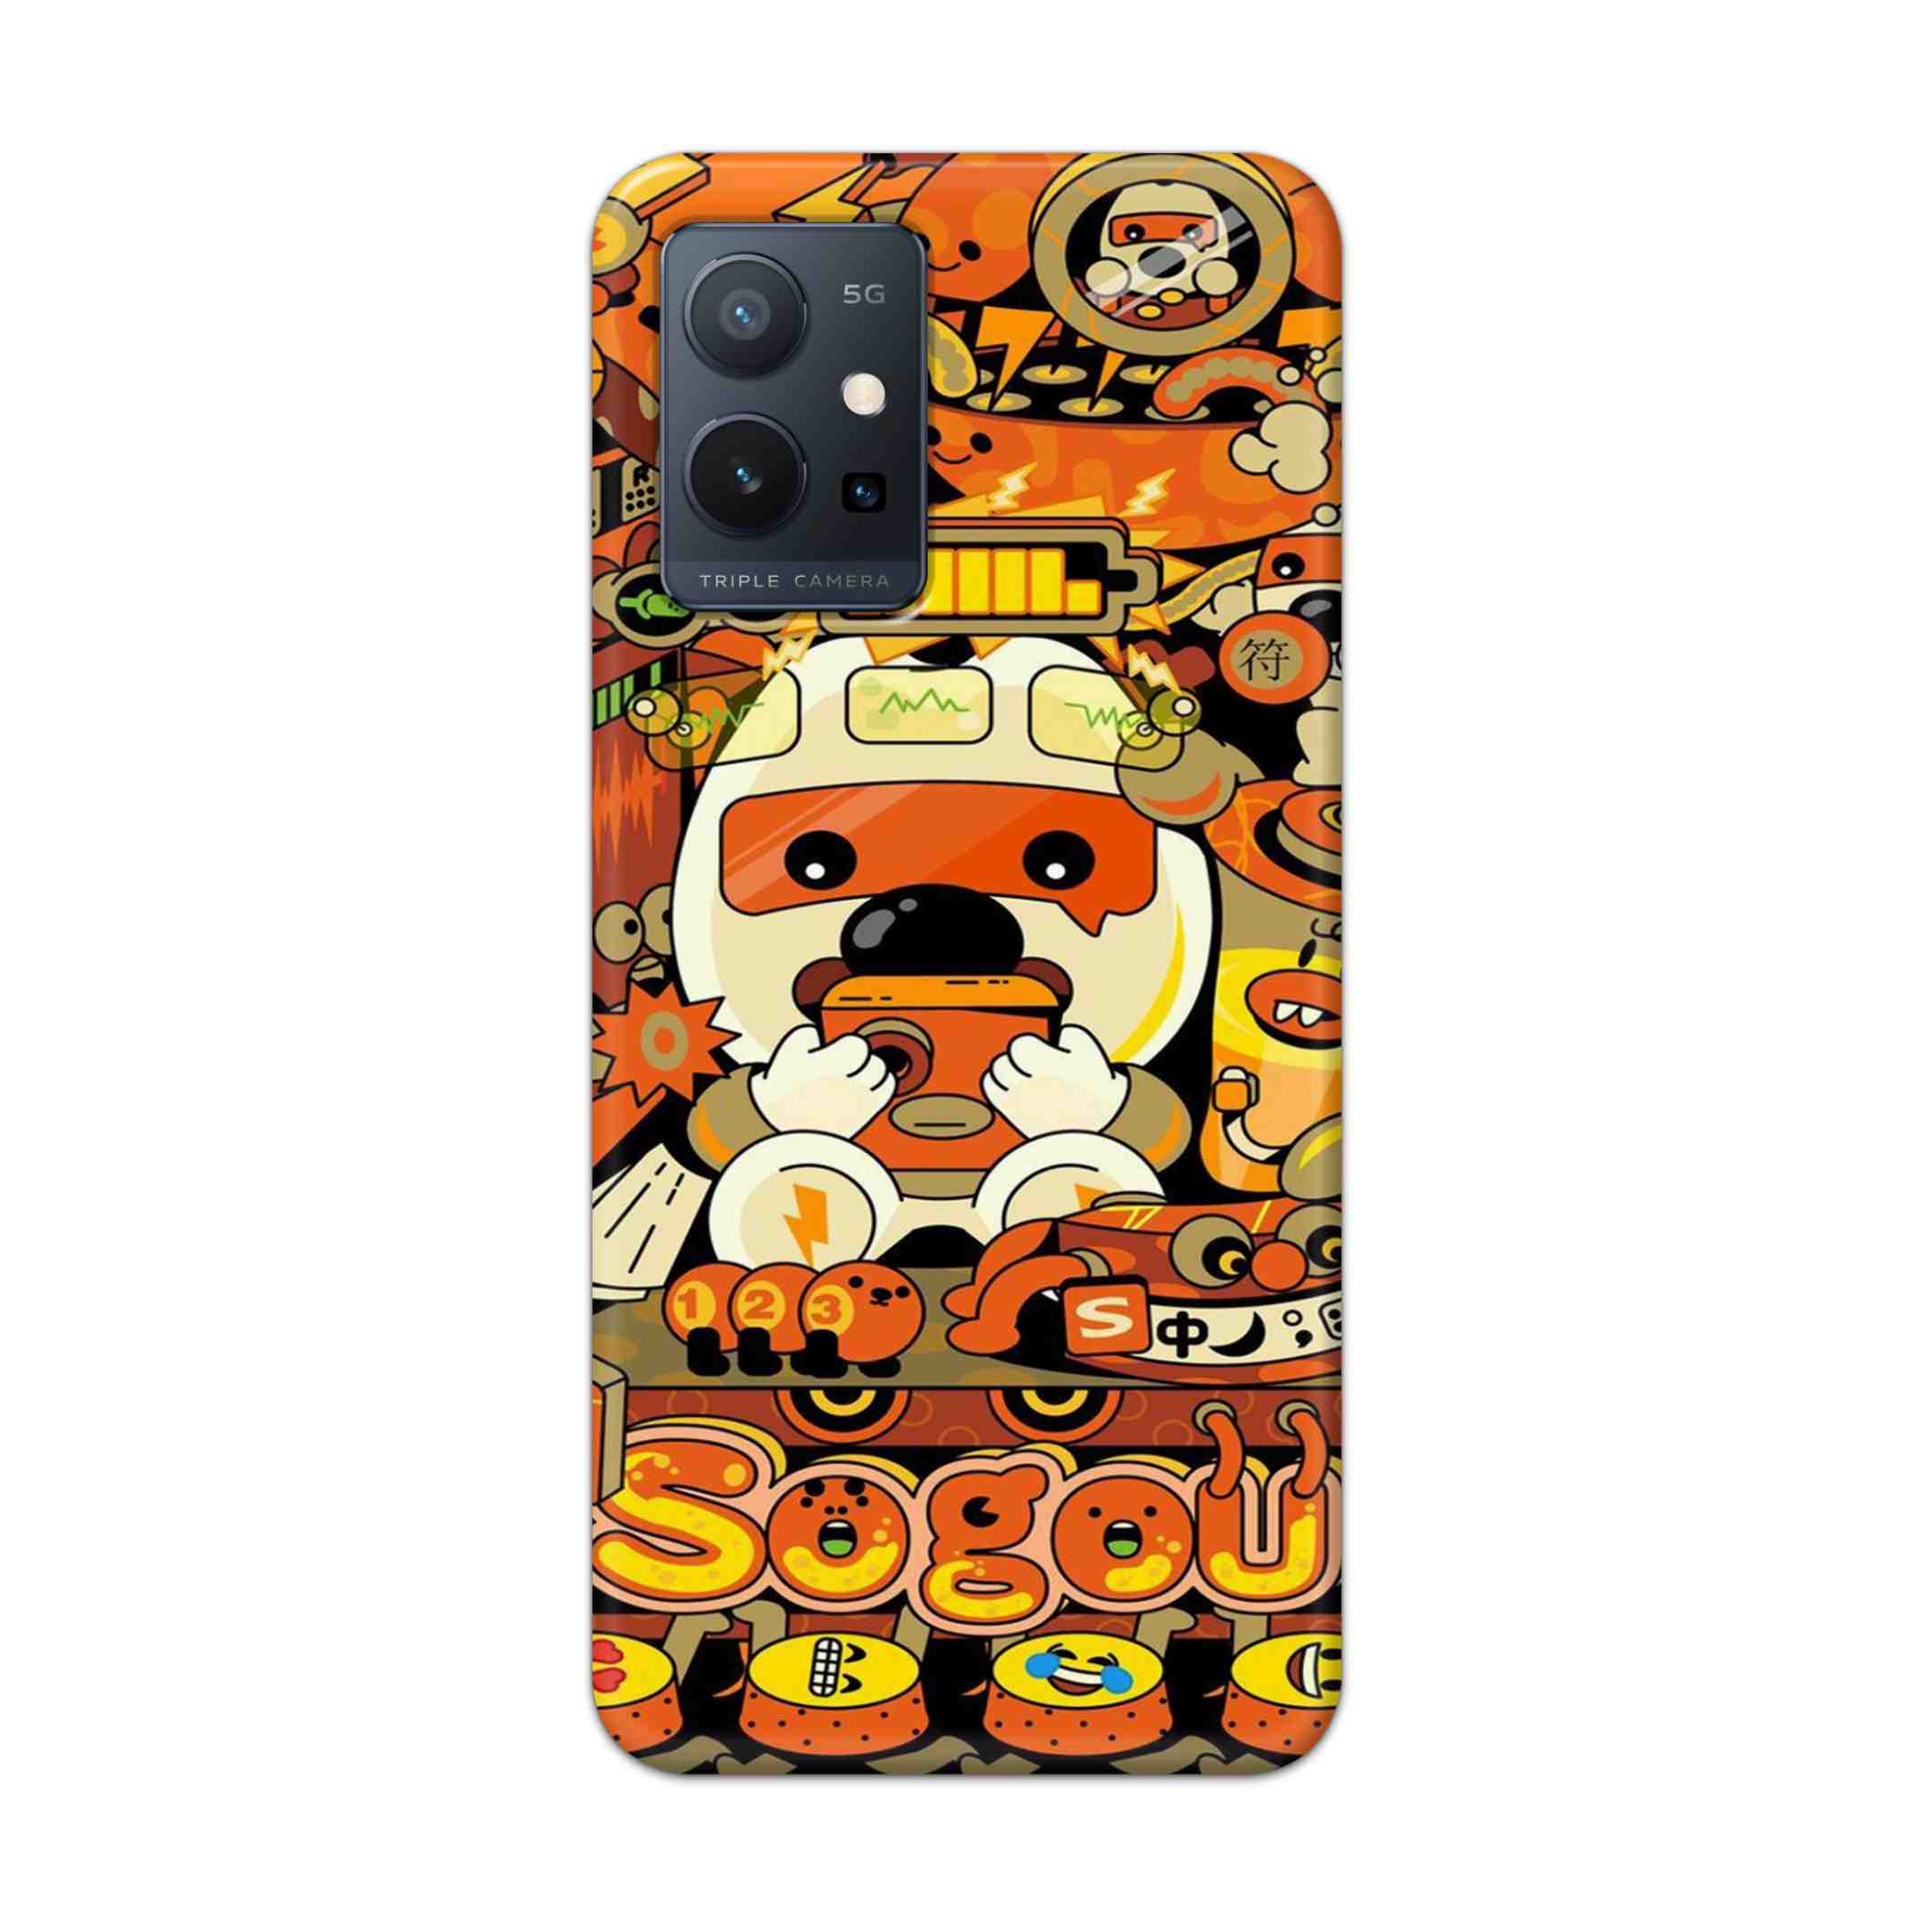 Buy Sogou Hard Back Mobile Phone Case Cover For Vivo T1 5G Online